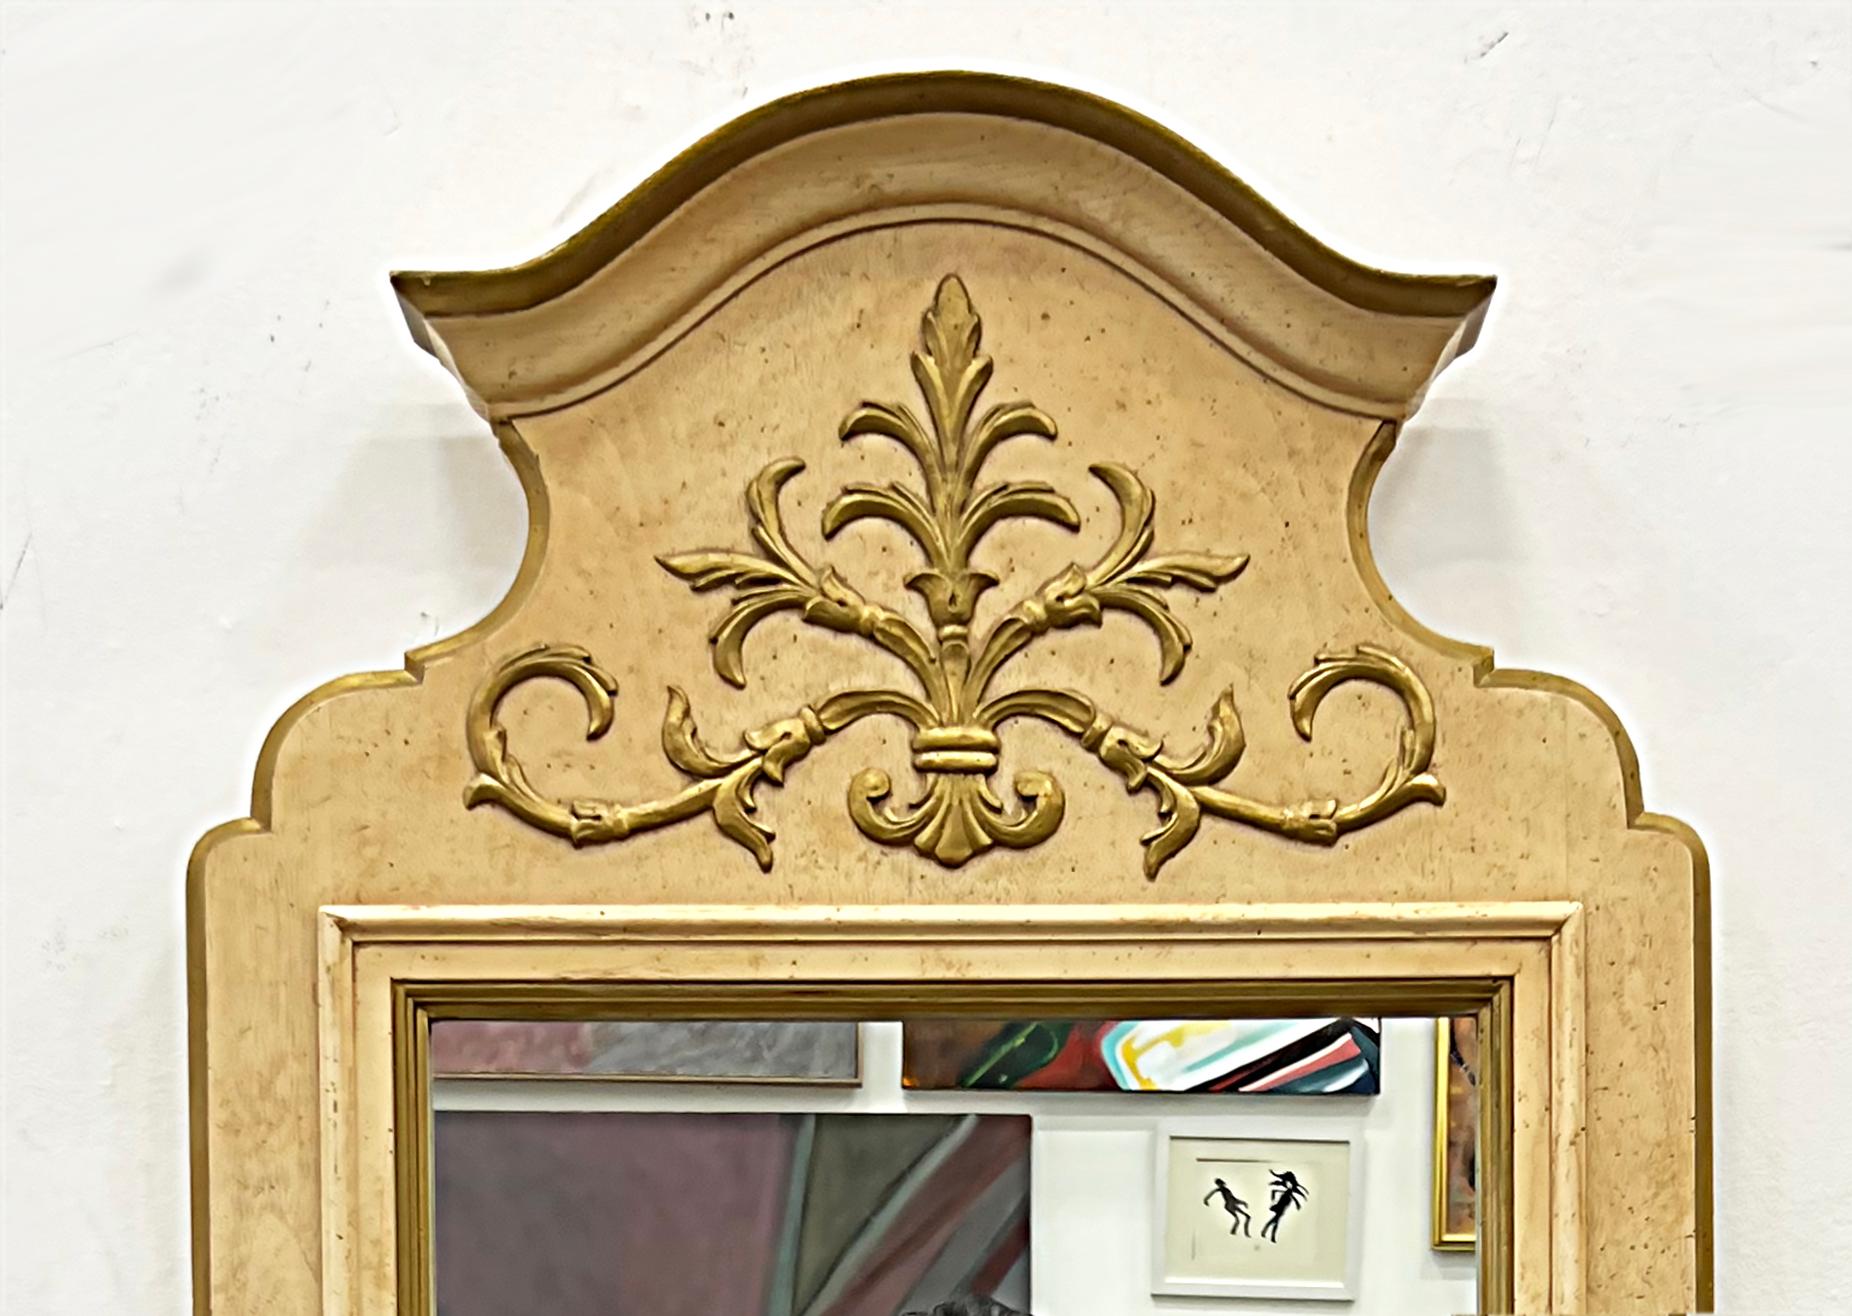 Miroirs en bois de style néoclassique français, de fabrication américaine des années 1960, Paire. 

Nous proposons à la vente une paire de miroirs en bois de style néoclassique français, fabriqués en Amérique dans les années 1960. Les miroirs ont